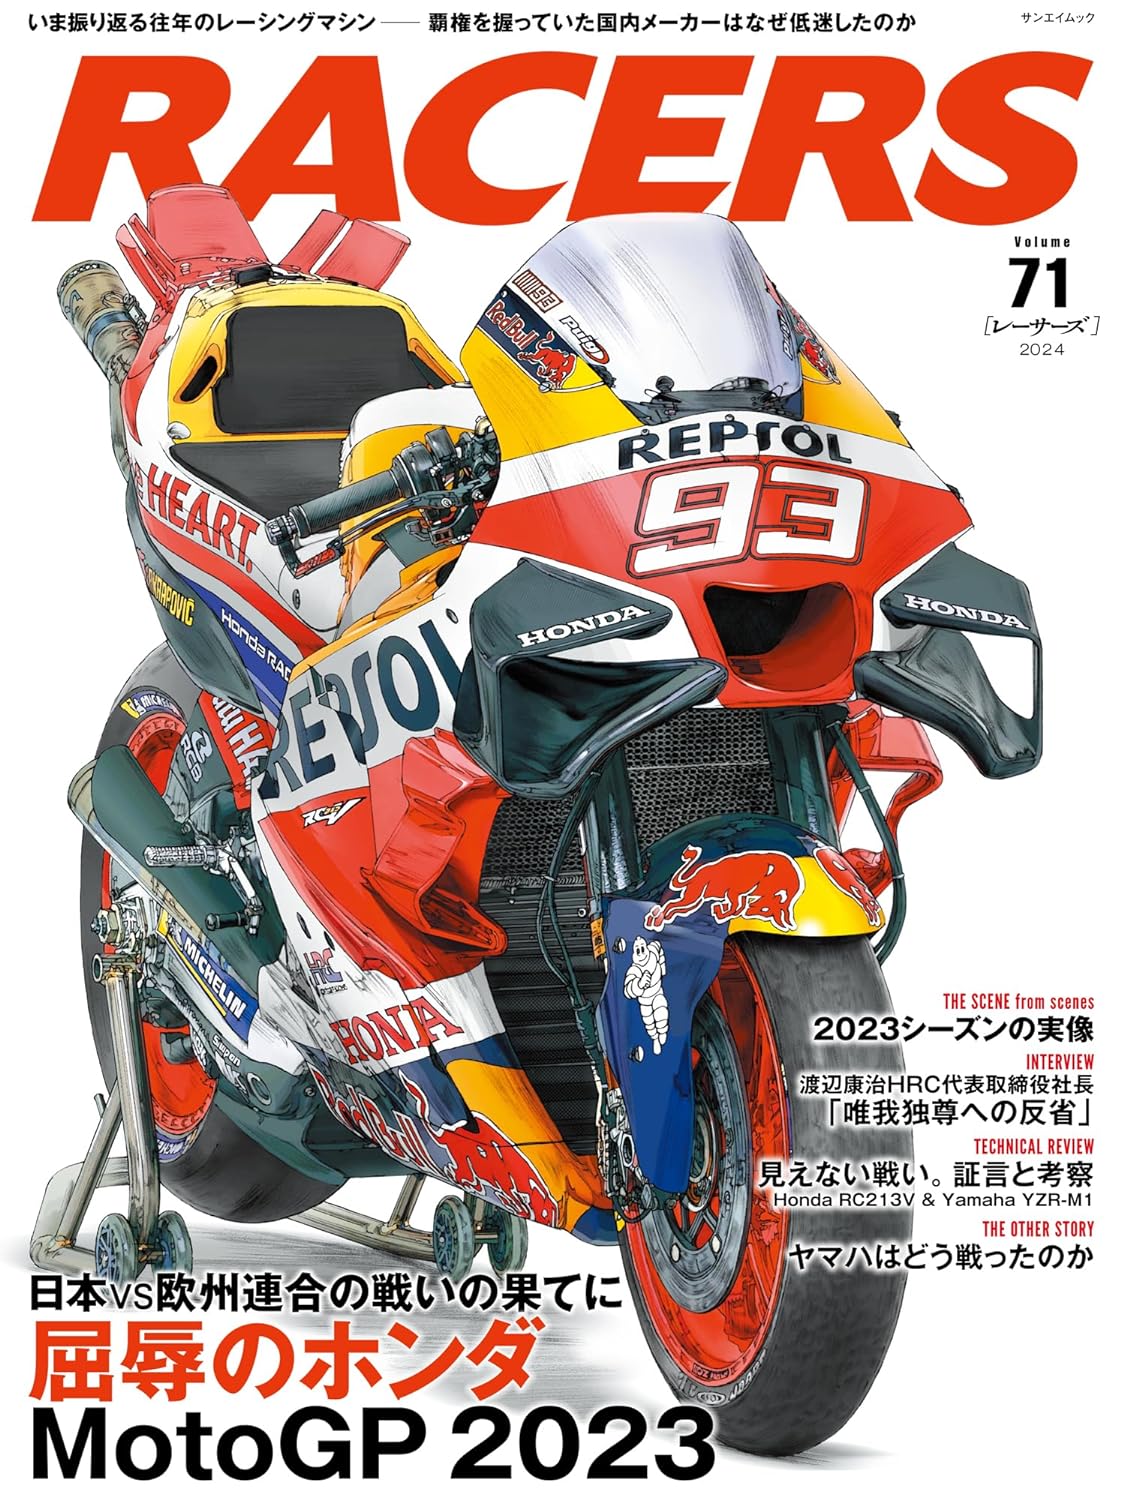 RACERS Vol.71 MotoGP